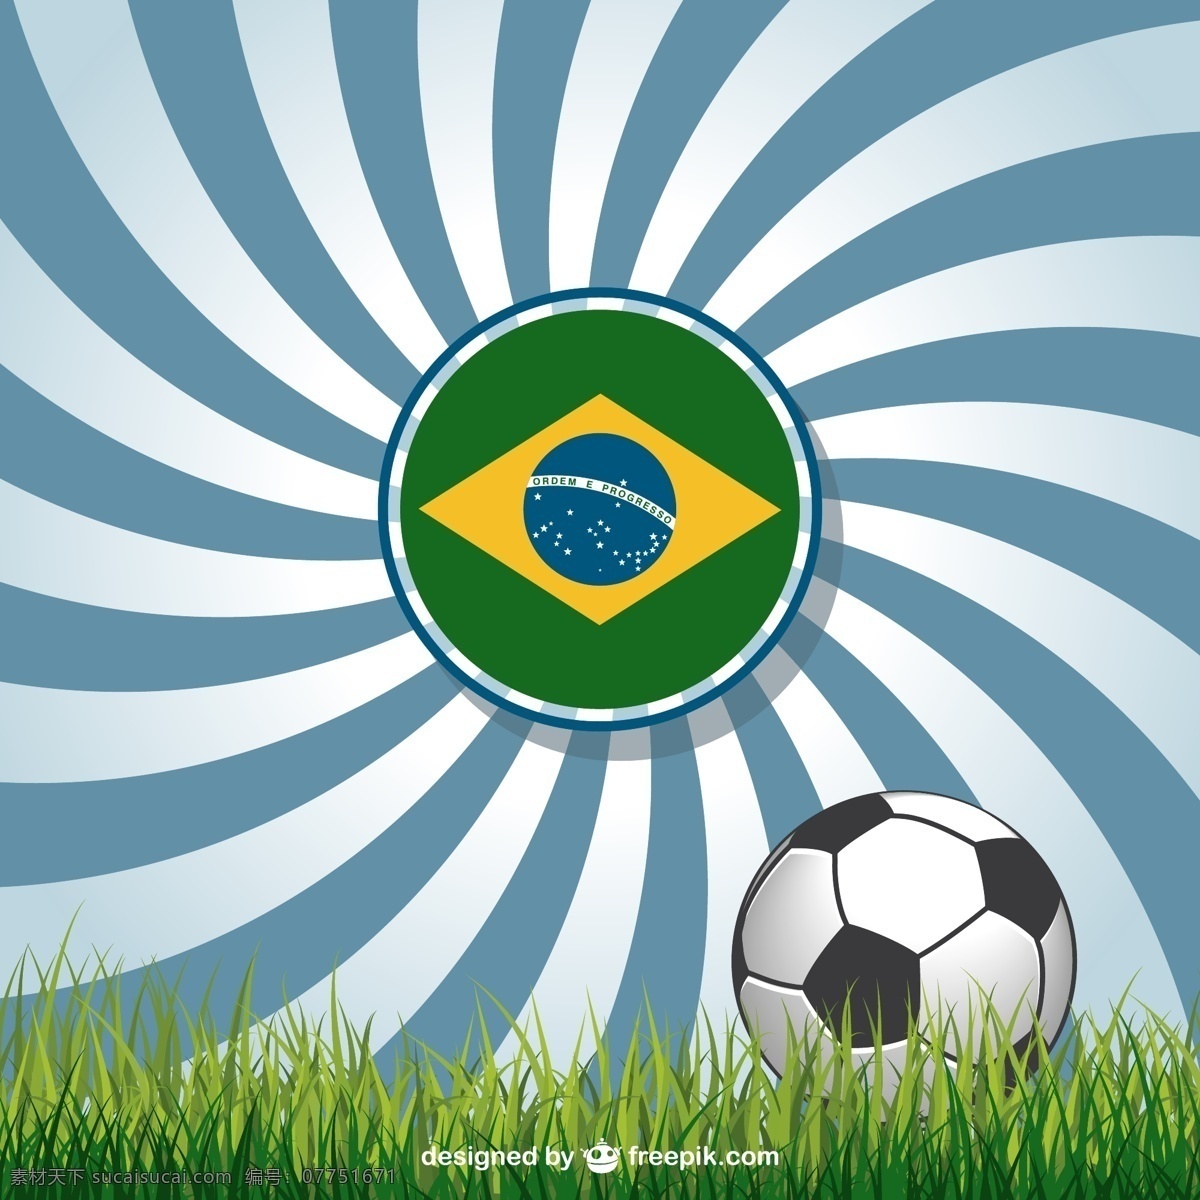 世界杯 背景 巴西 国旗 海报 足球 体育 世界 旗帜 草地 绿色背景 运动 壁纸 图形 庆典 平面设计 杯子 活动 奖 白色